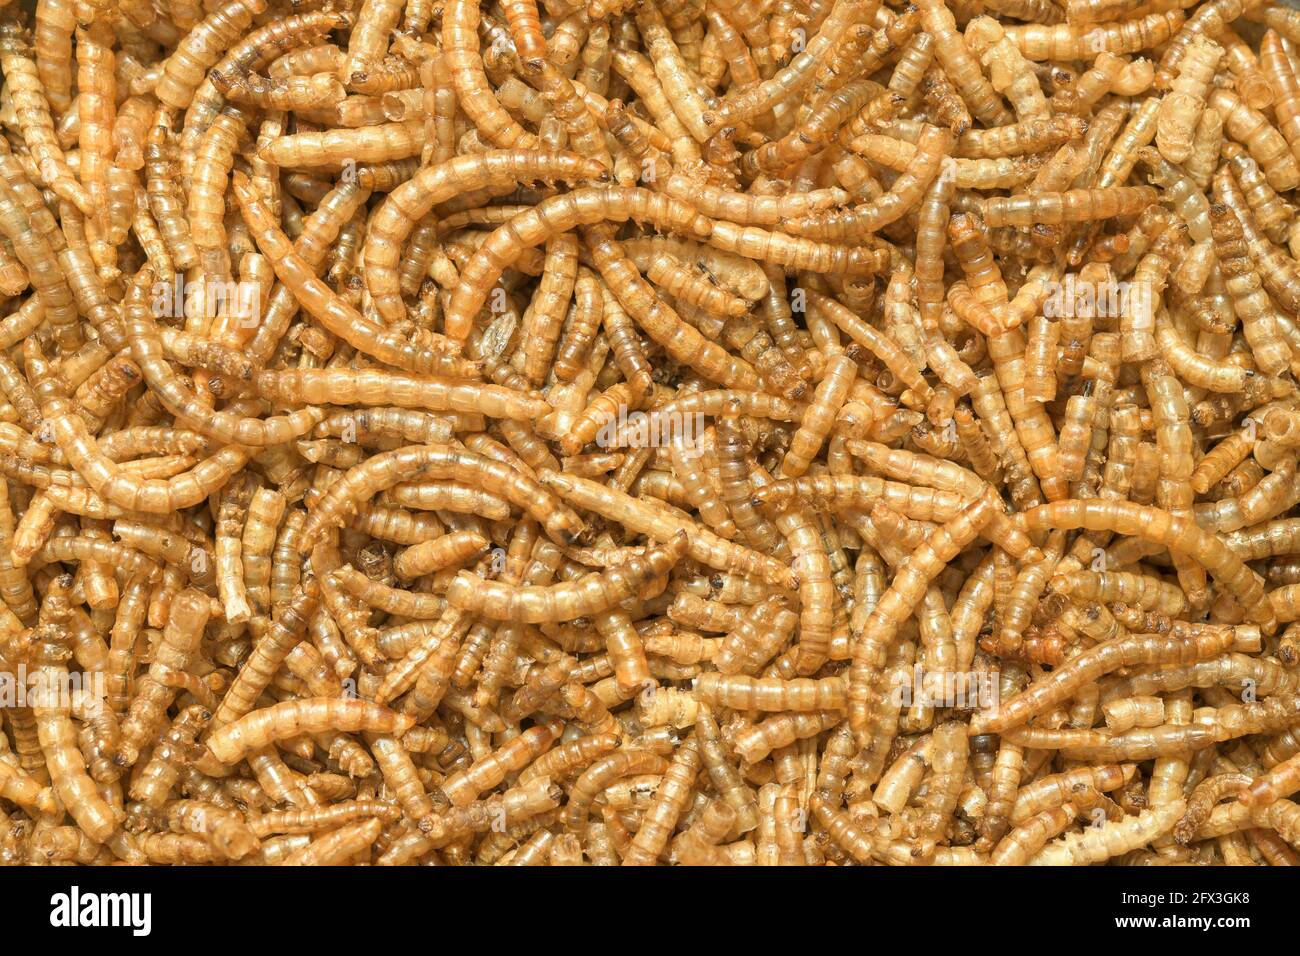 Los gusanos de carne secos, las larvas del escarabajo del gusano de la  carne (Tenebrio molitor), se utilizan como alimento para reptiles, peces y  aves y como cebo de pesca, también comestible